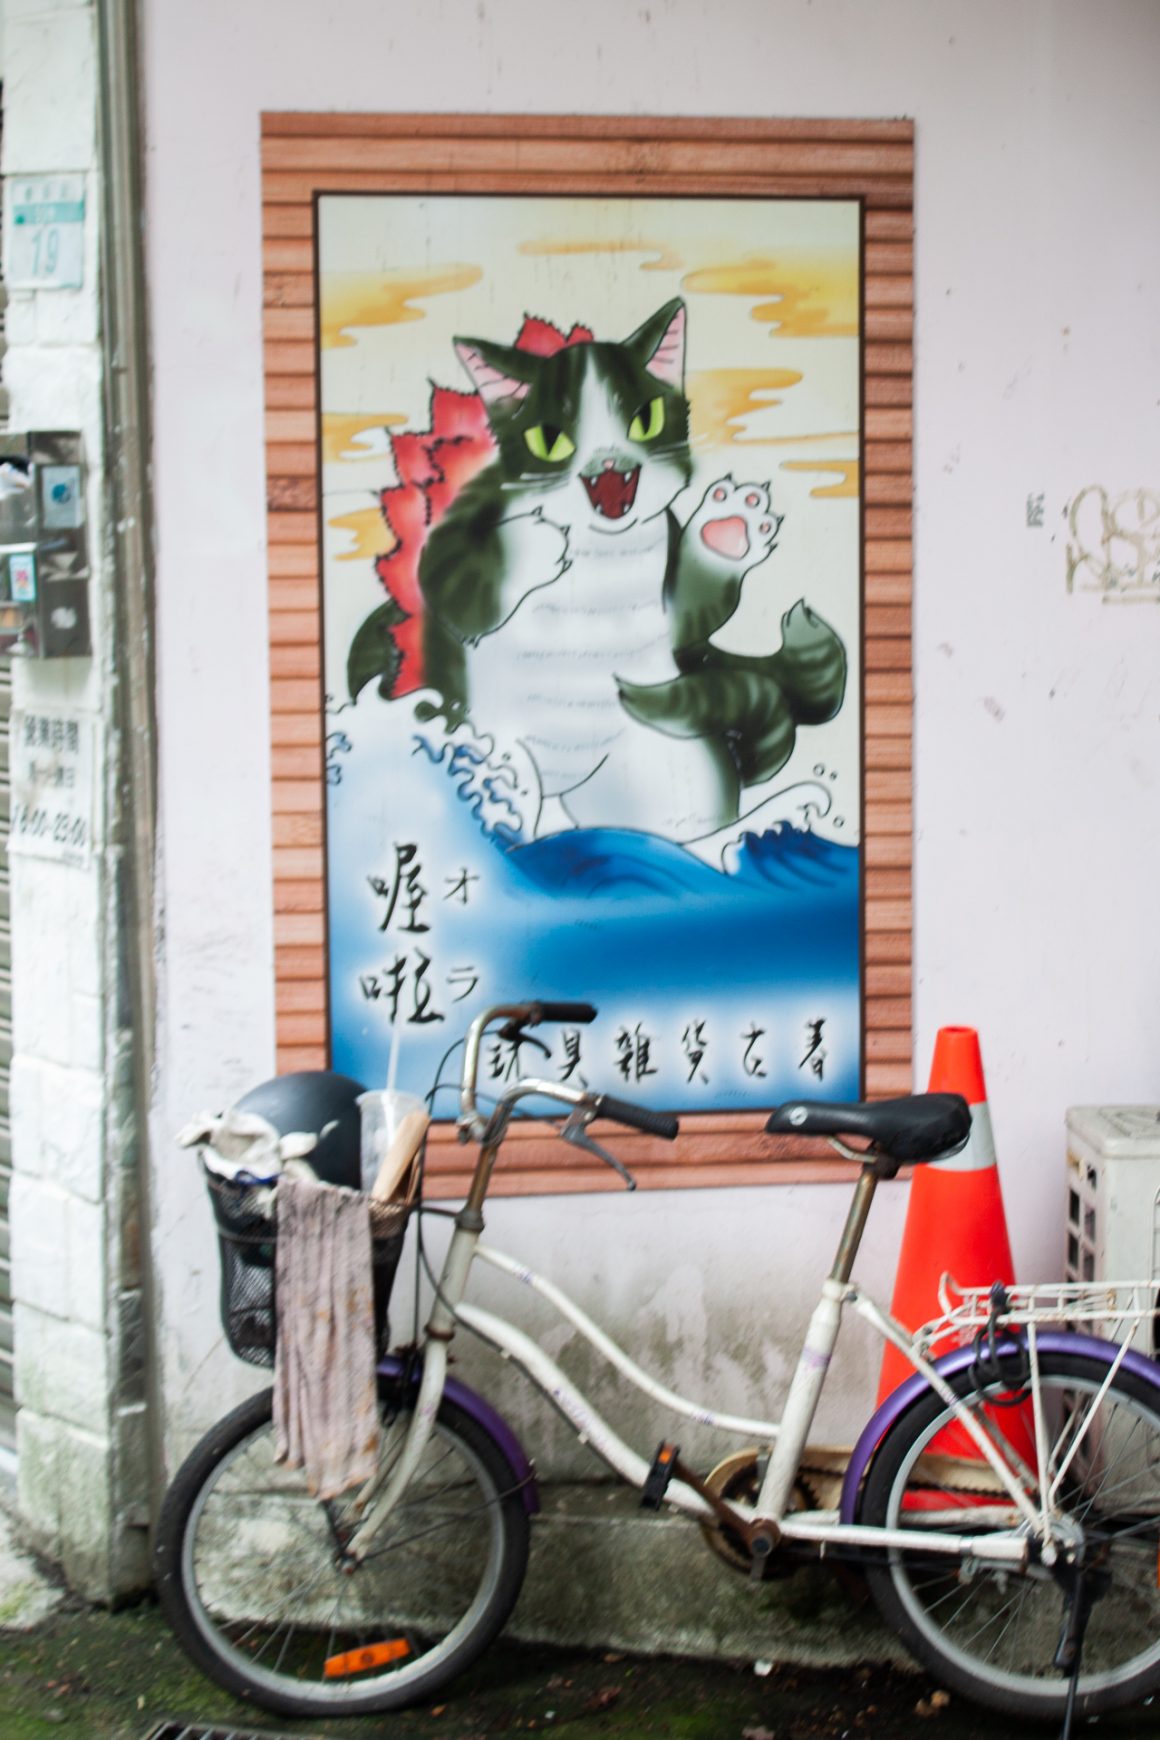 Funny cat art and bike in Taipei, Taiwan